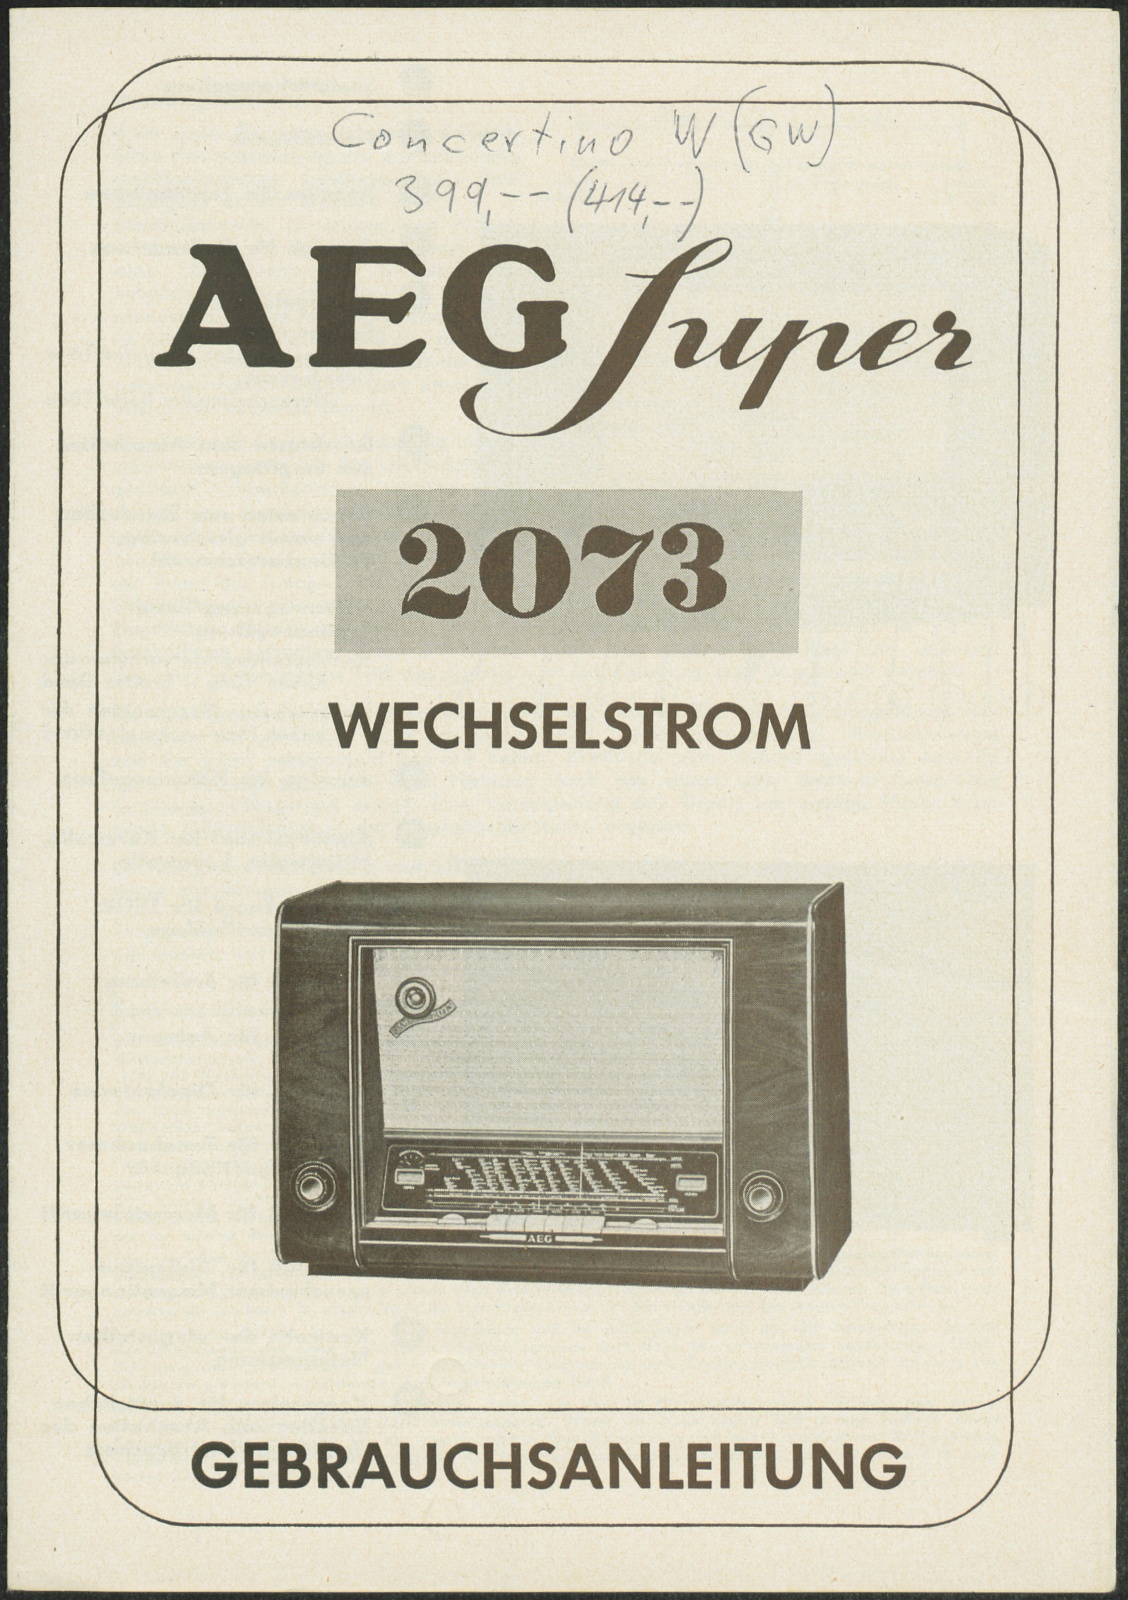 Bedienungsanleitung: AEG Super 2073 Wechselstrom Gebrauchsanleitung (Stiftung Deutsches Technikmuseum Berlin CC0)